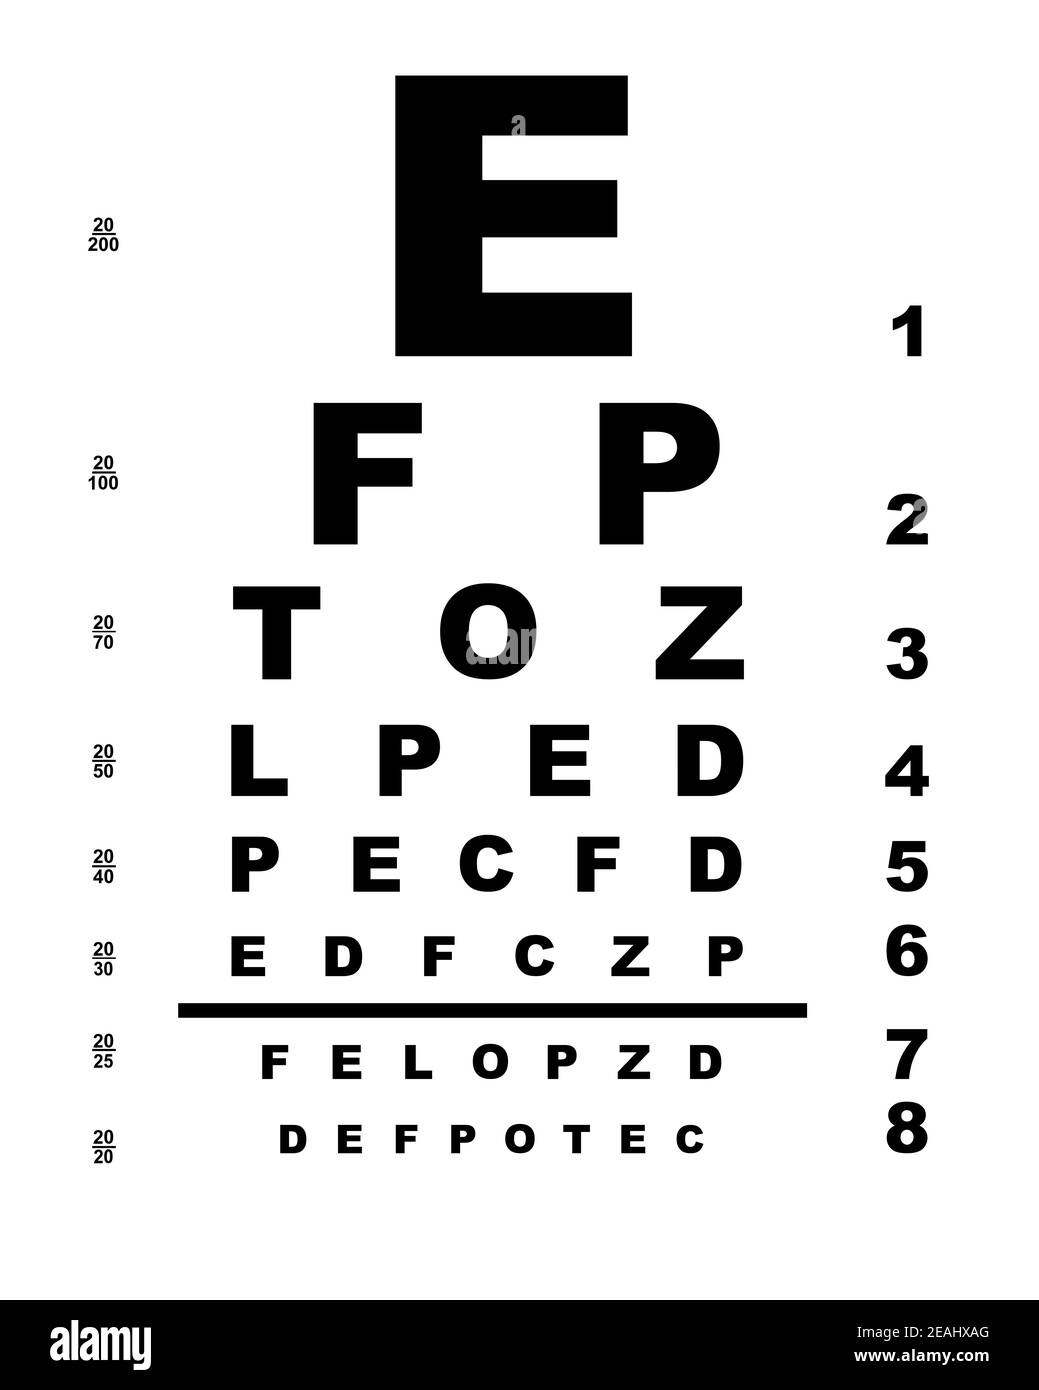 50-printable-eye-test-charts-printabletemplates